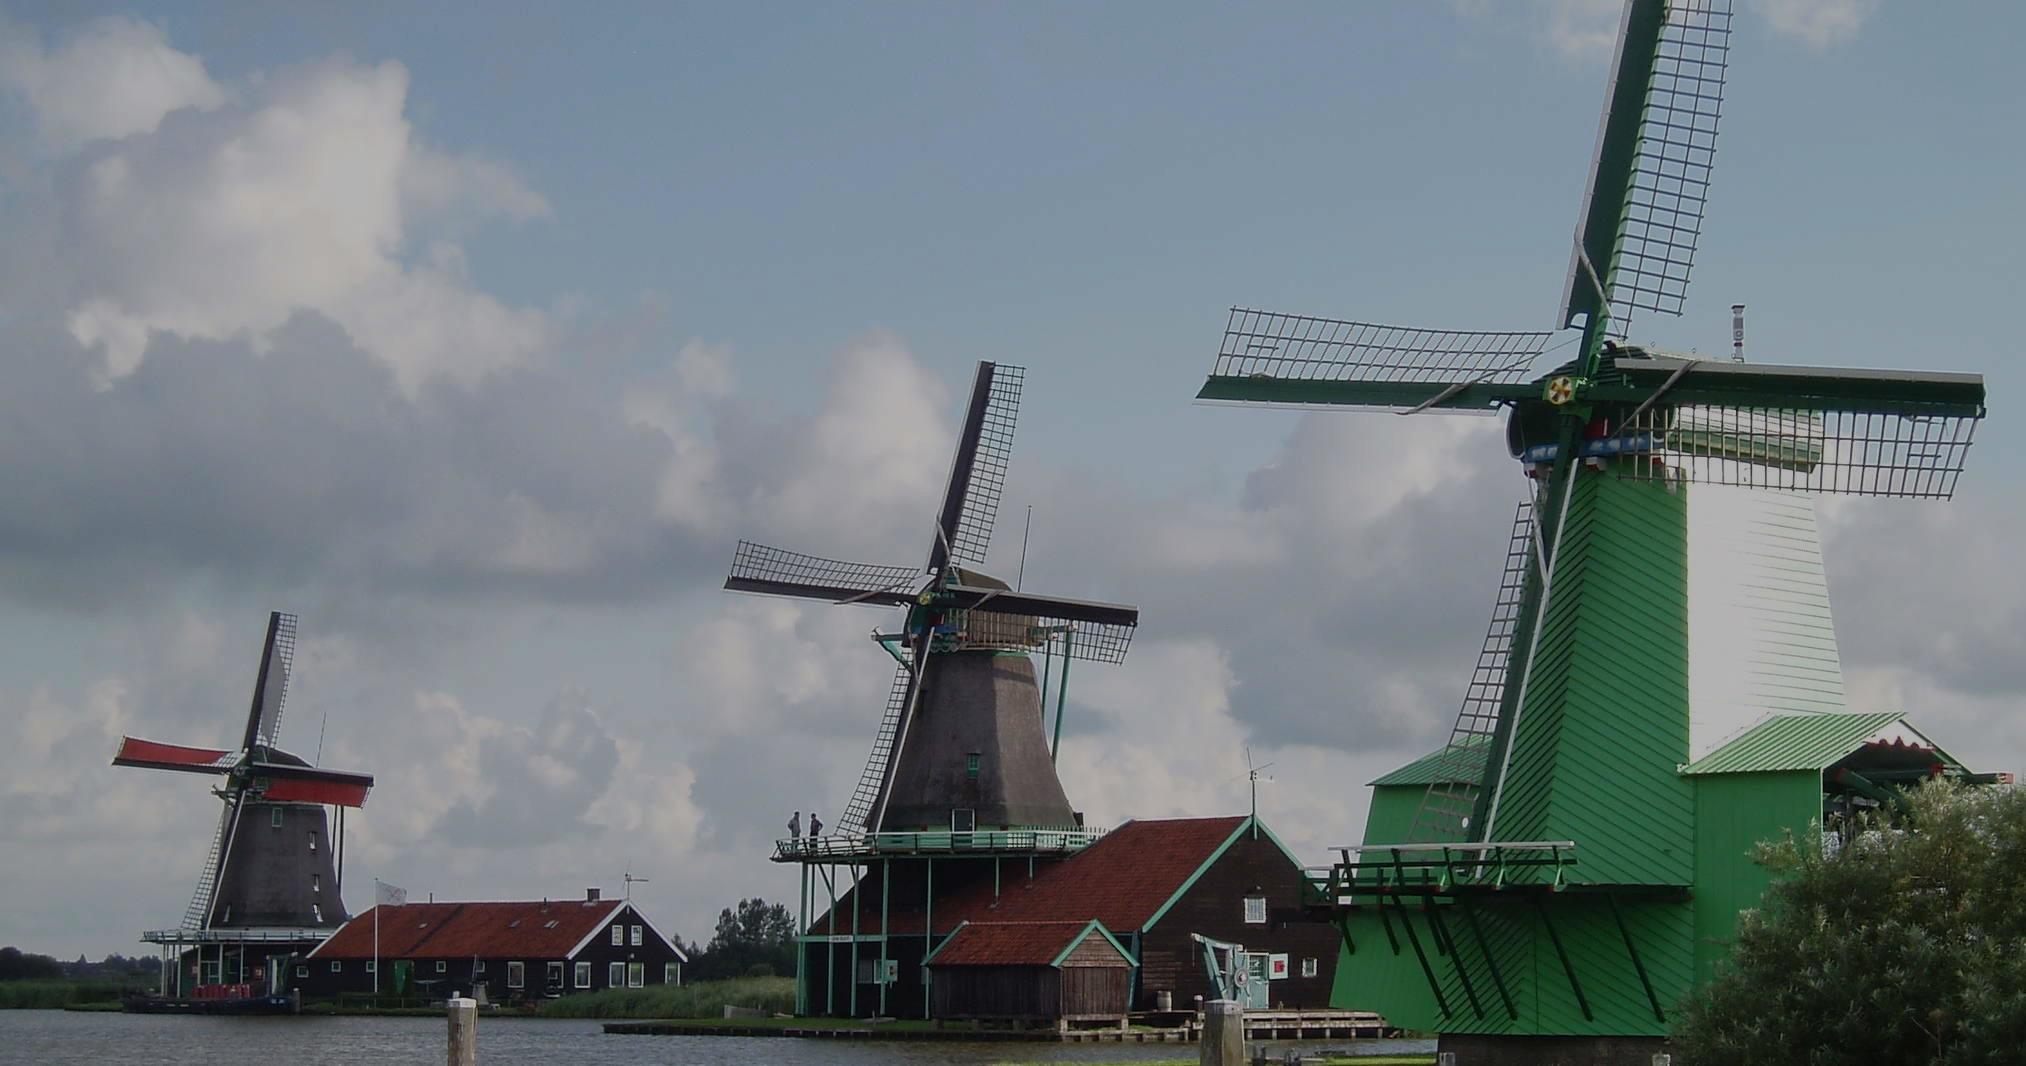 Day Trip to Zaanse Schans Windmills - Edam - Volendam and Marken - Accommodations in Ámsterdam